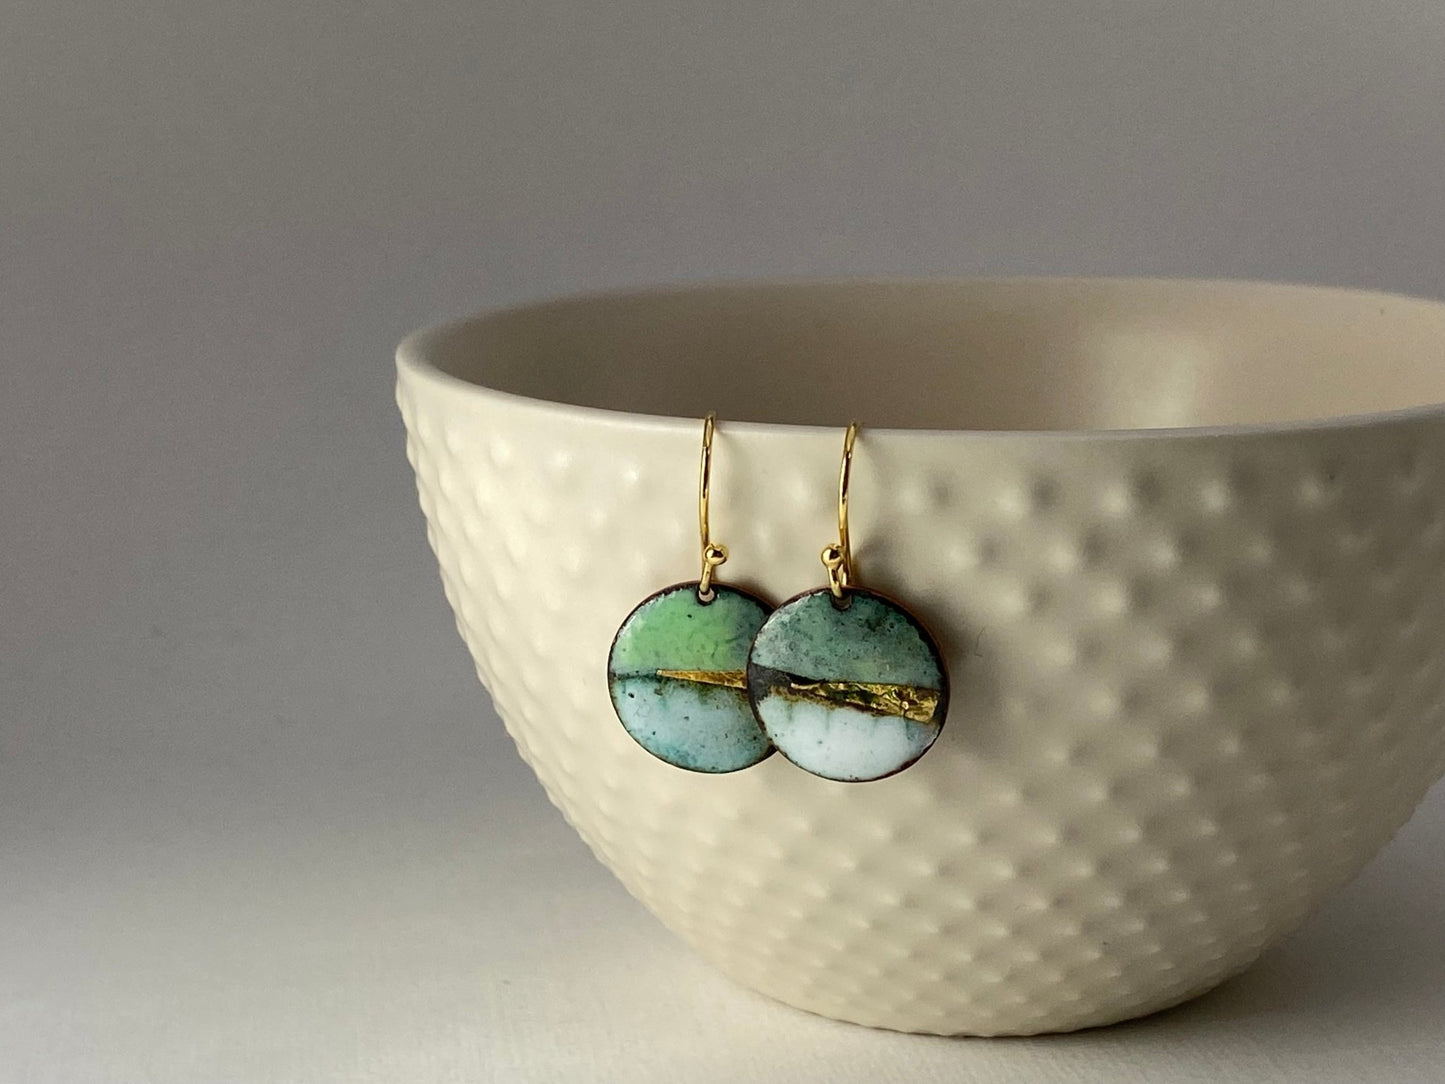 Landscape round enamel earrings - Green, blue or purple - Katie Johnston Jewellery